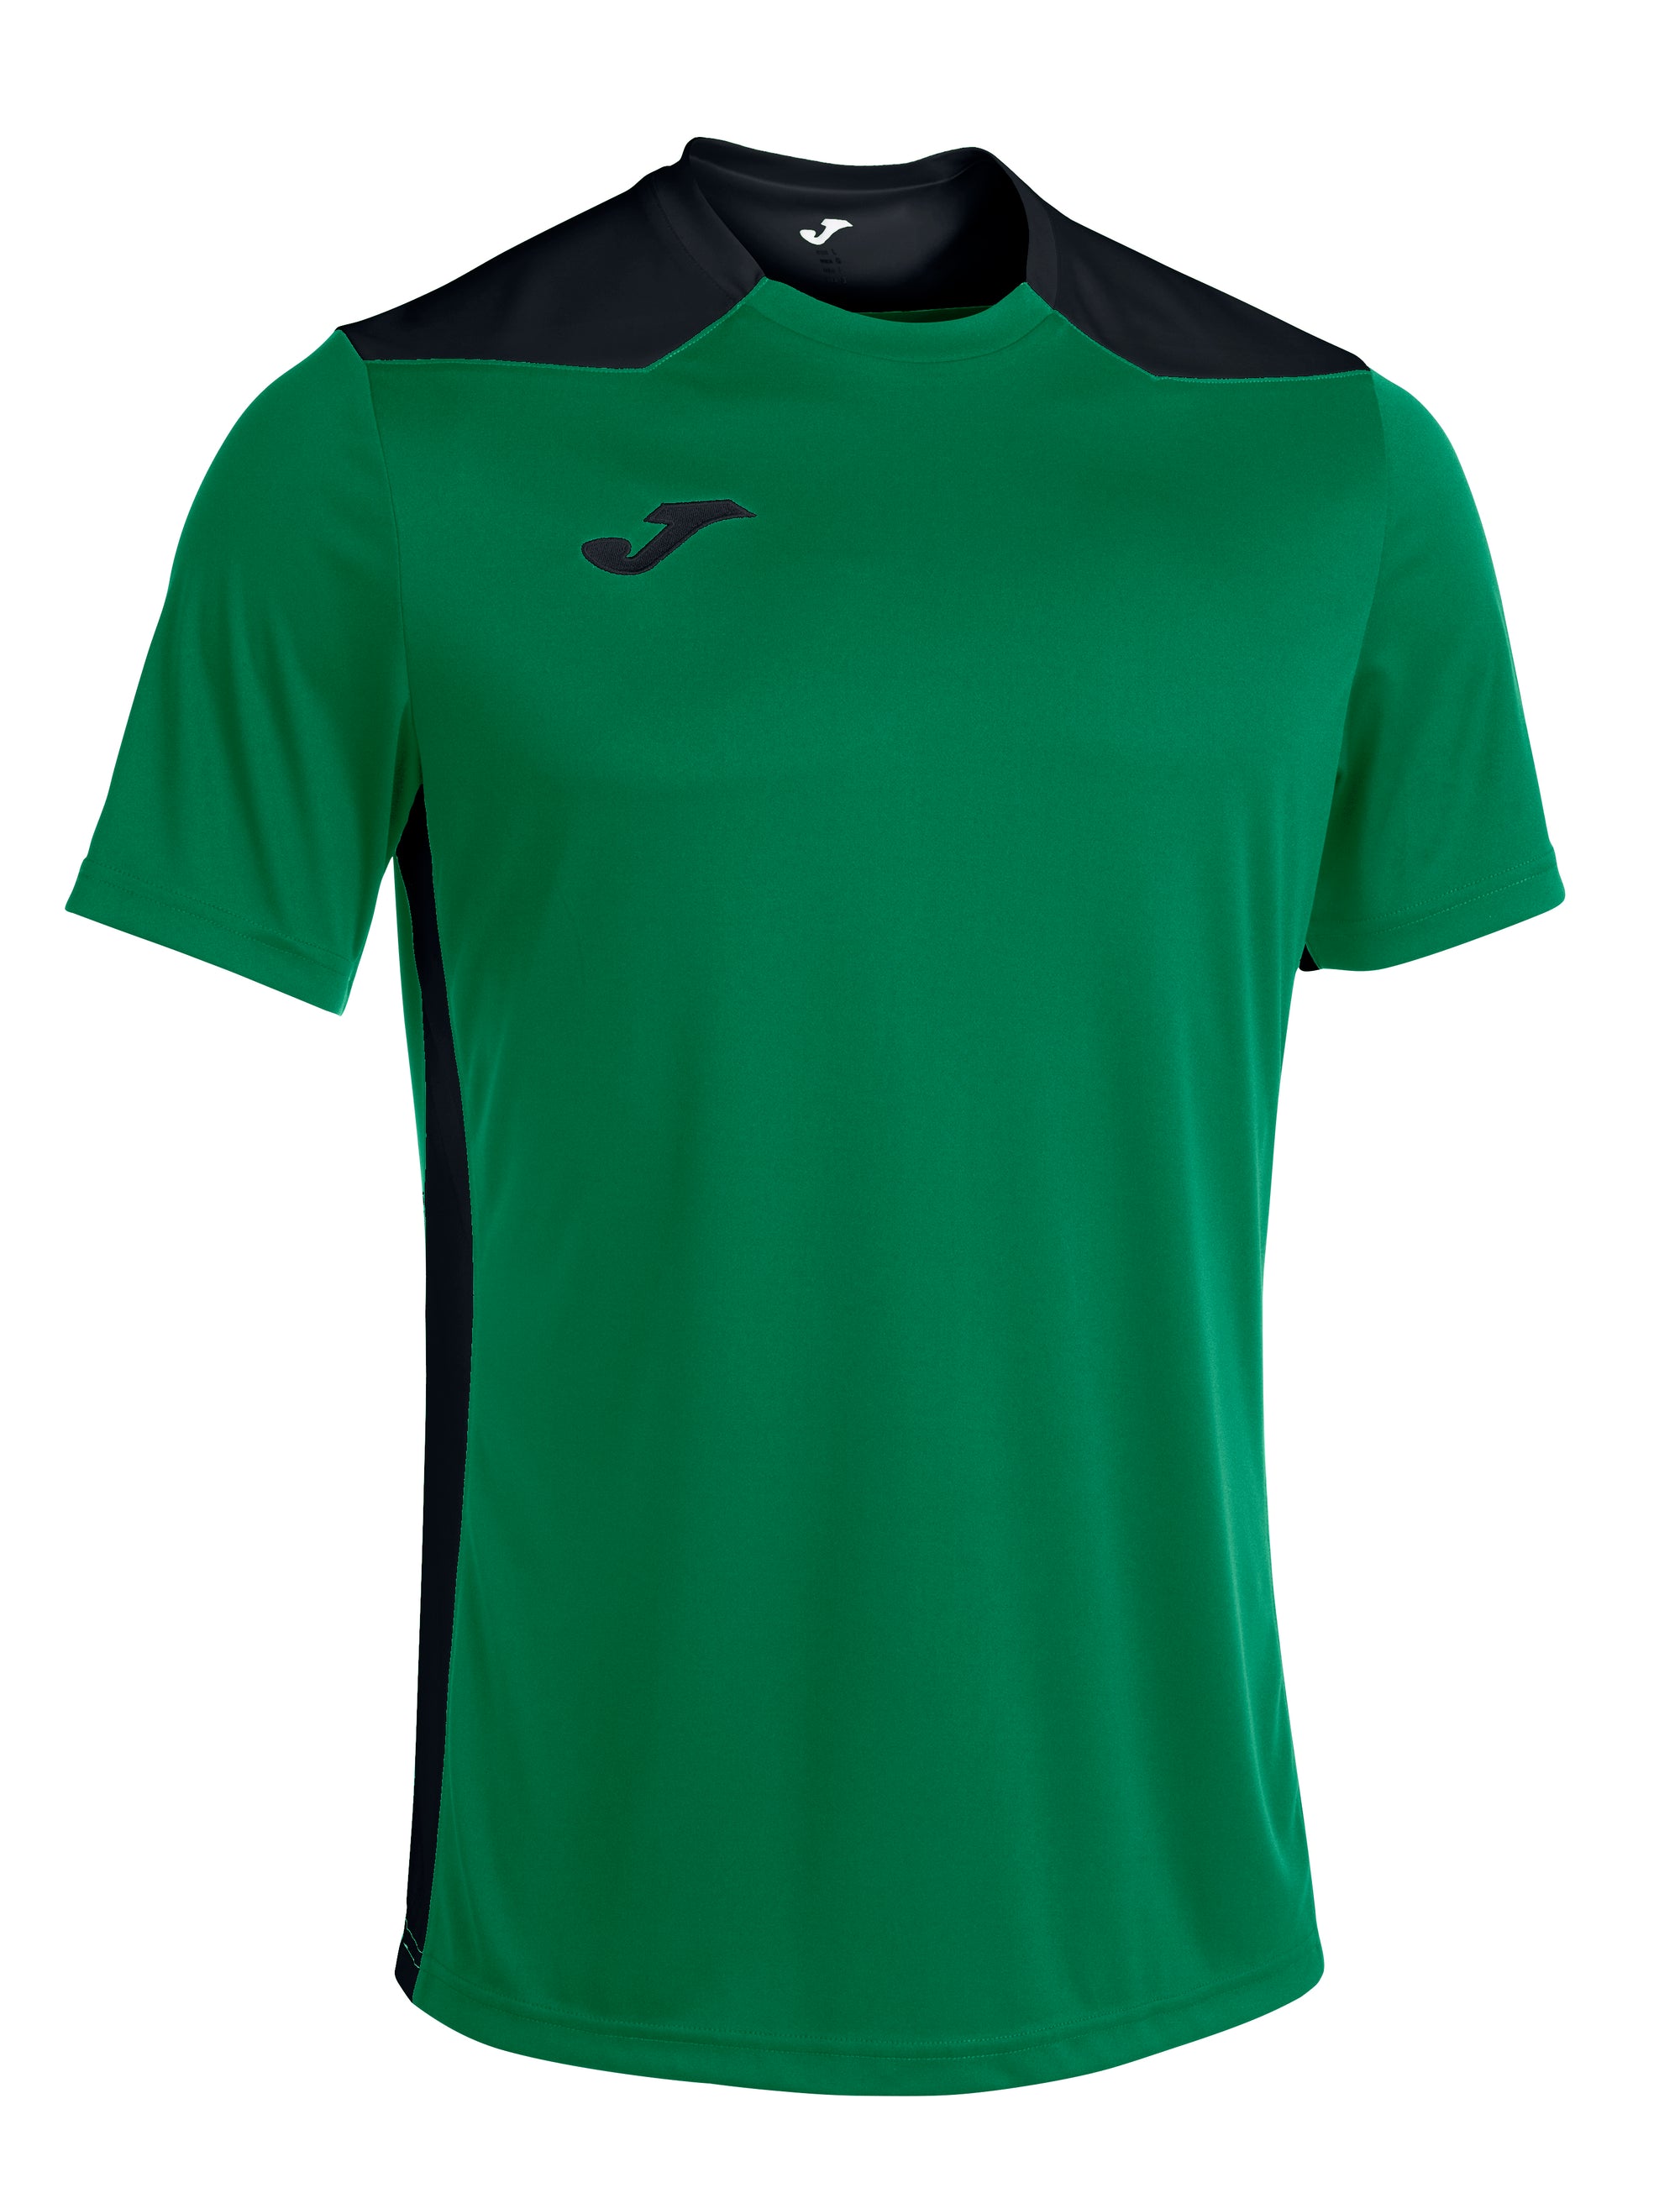 Joma Championship VI Short Sleeved T-Shirt - Green Medium/Dark Navy